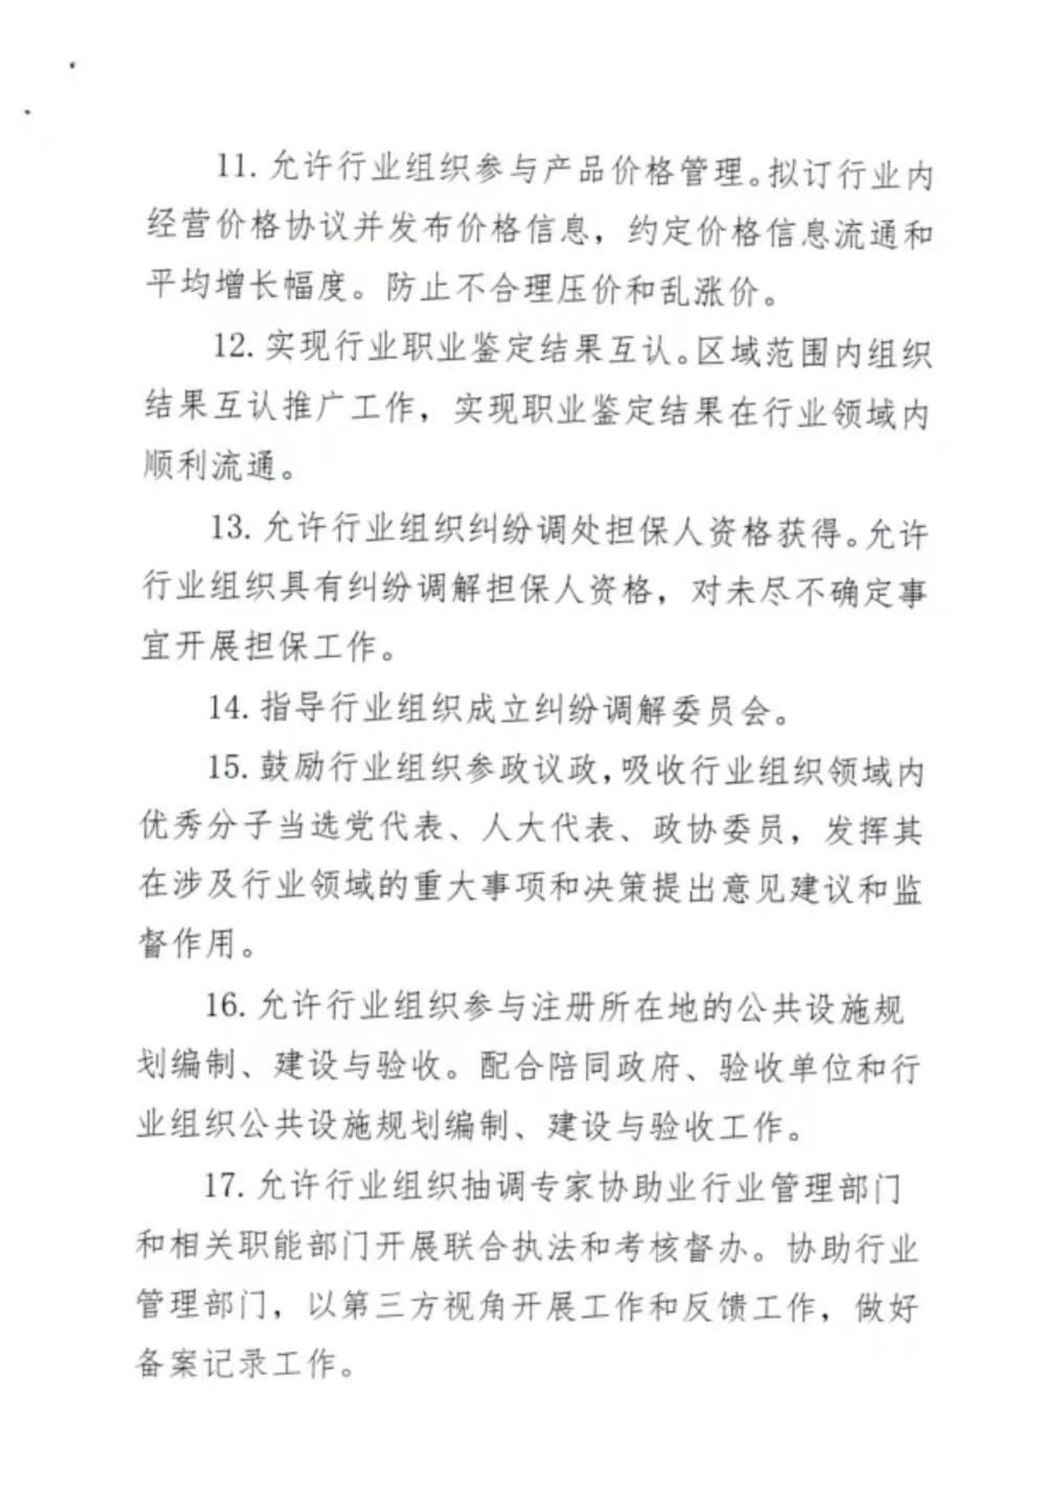 海南社会组织授赋权文件征求意见-4.jpg